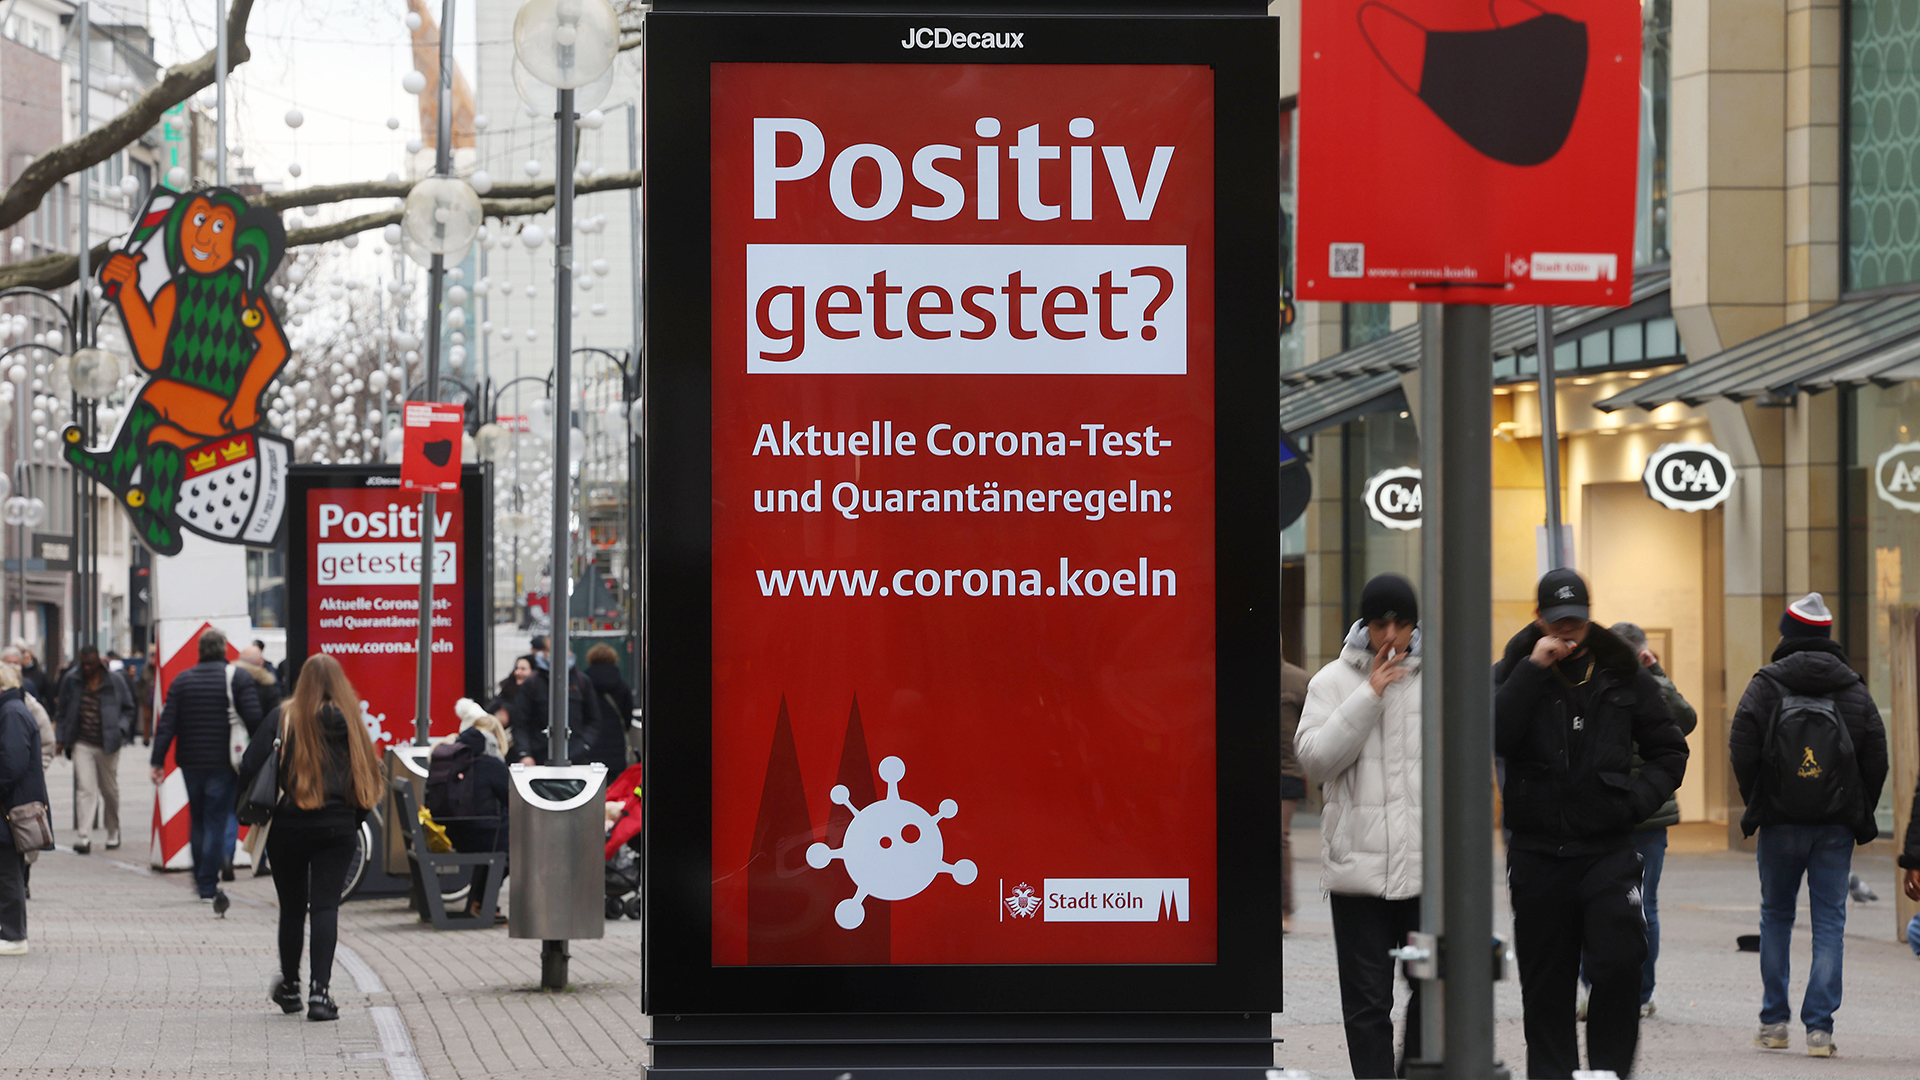 Menschen gehen an einer elektronischen Werbetafel mit der Aufschrift "Positiv getestet?" in der Kölner Innenstadt vorbei.  | dpa